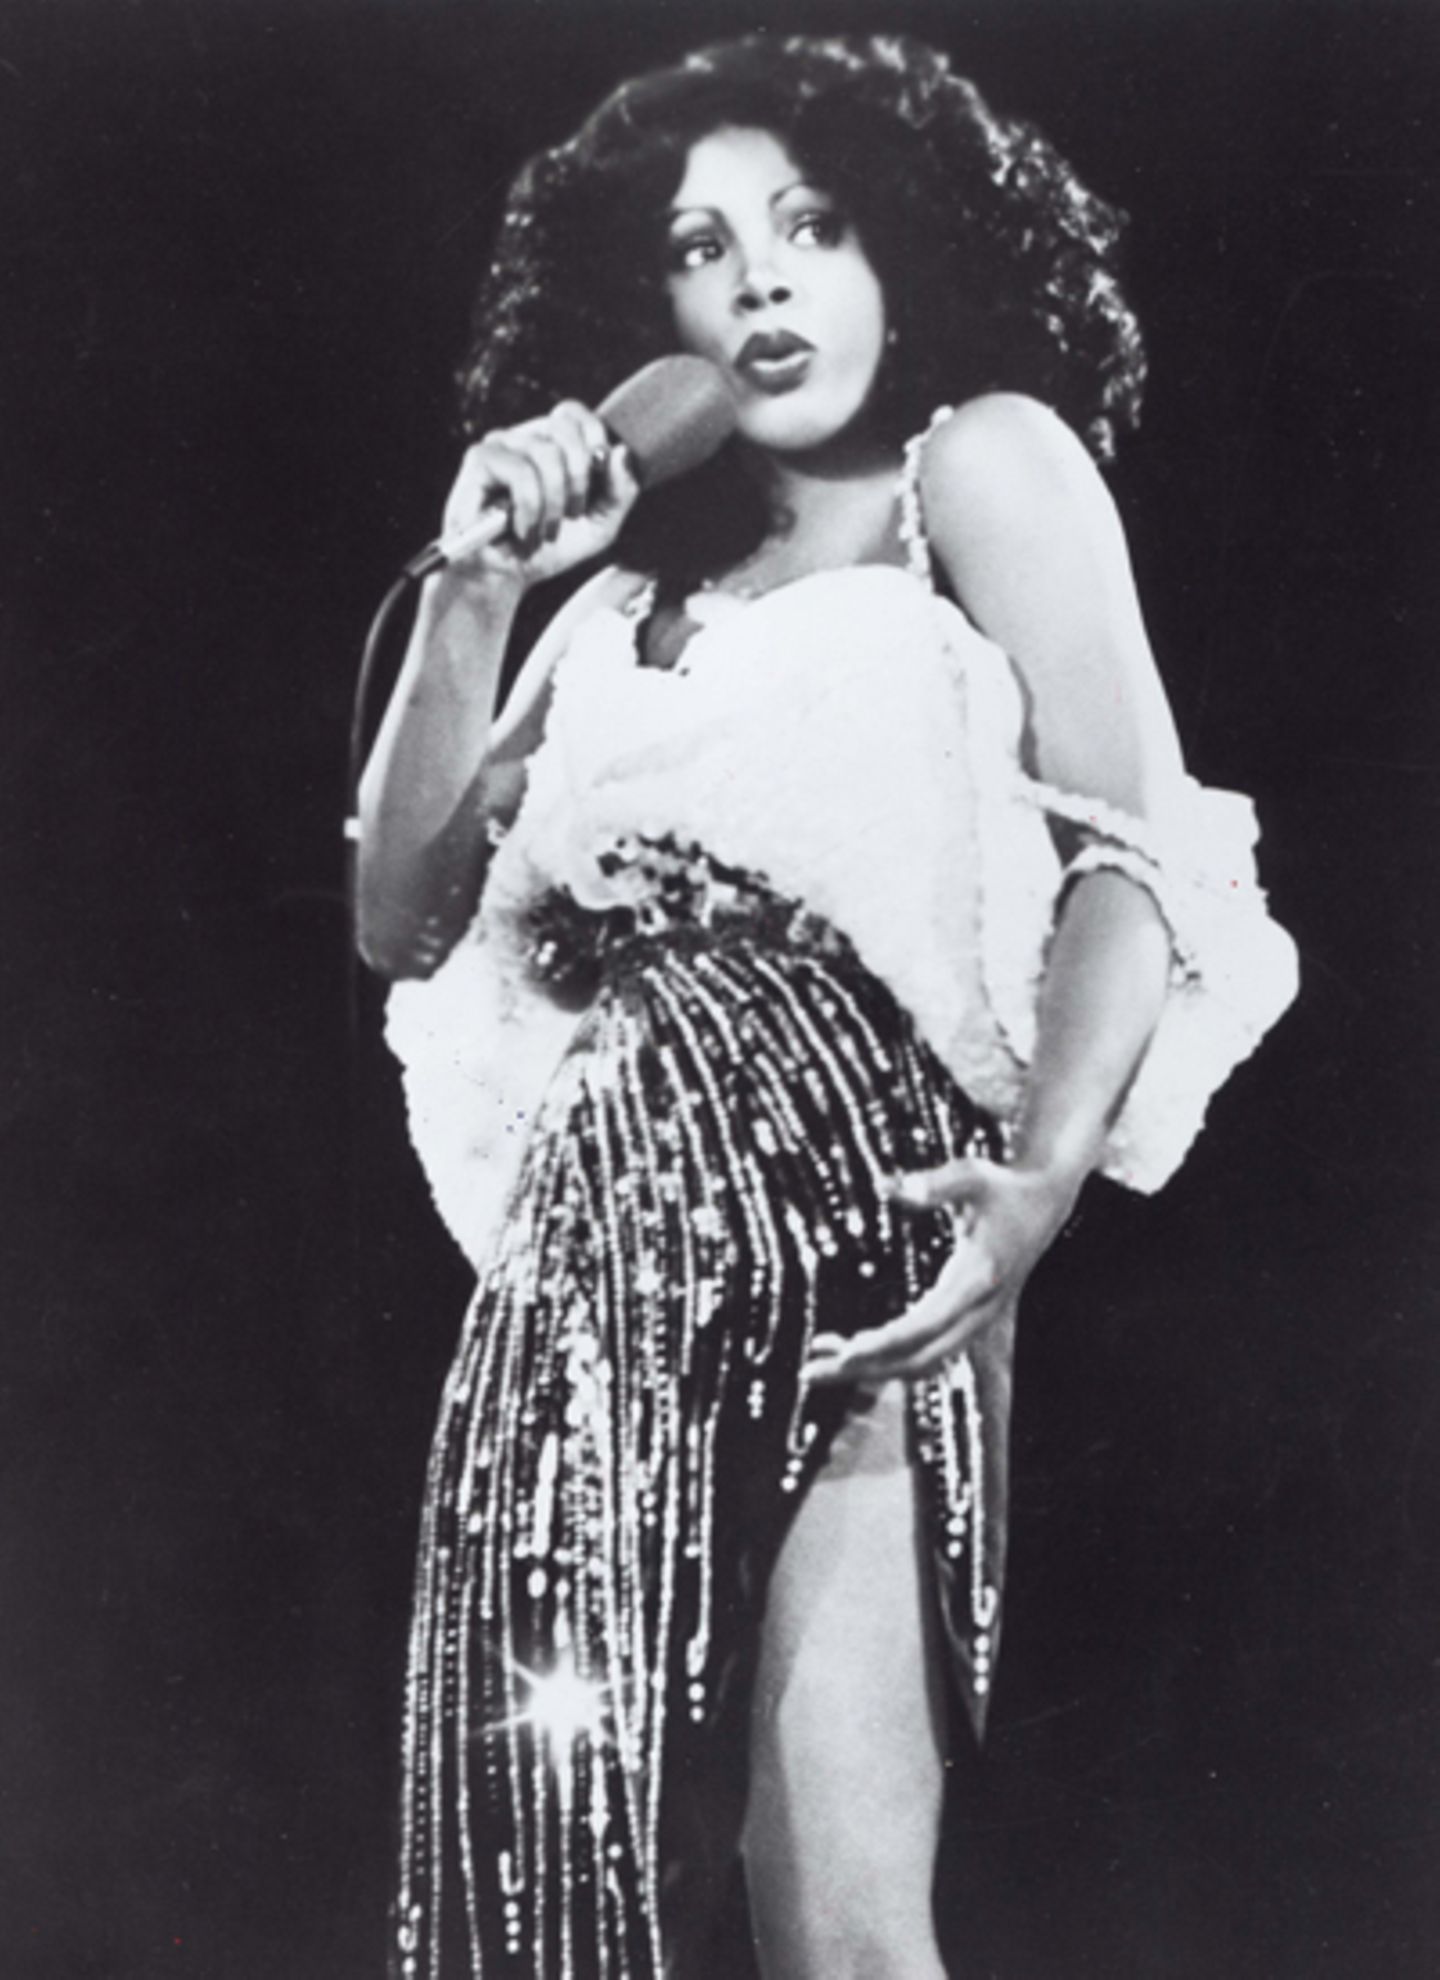 Lasziv und aufreizend: Donna Summer galt nicht nur wegen ihrer Songs als Sex-Ikone. Auch die knappen Bühnenoutfits, oft mit Pail